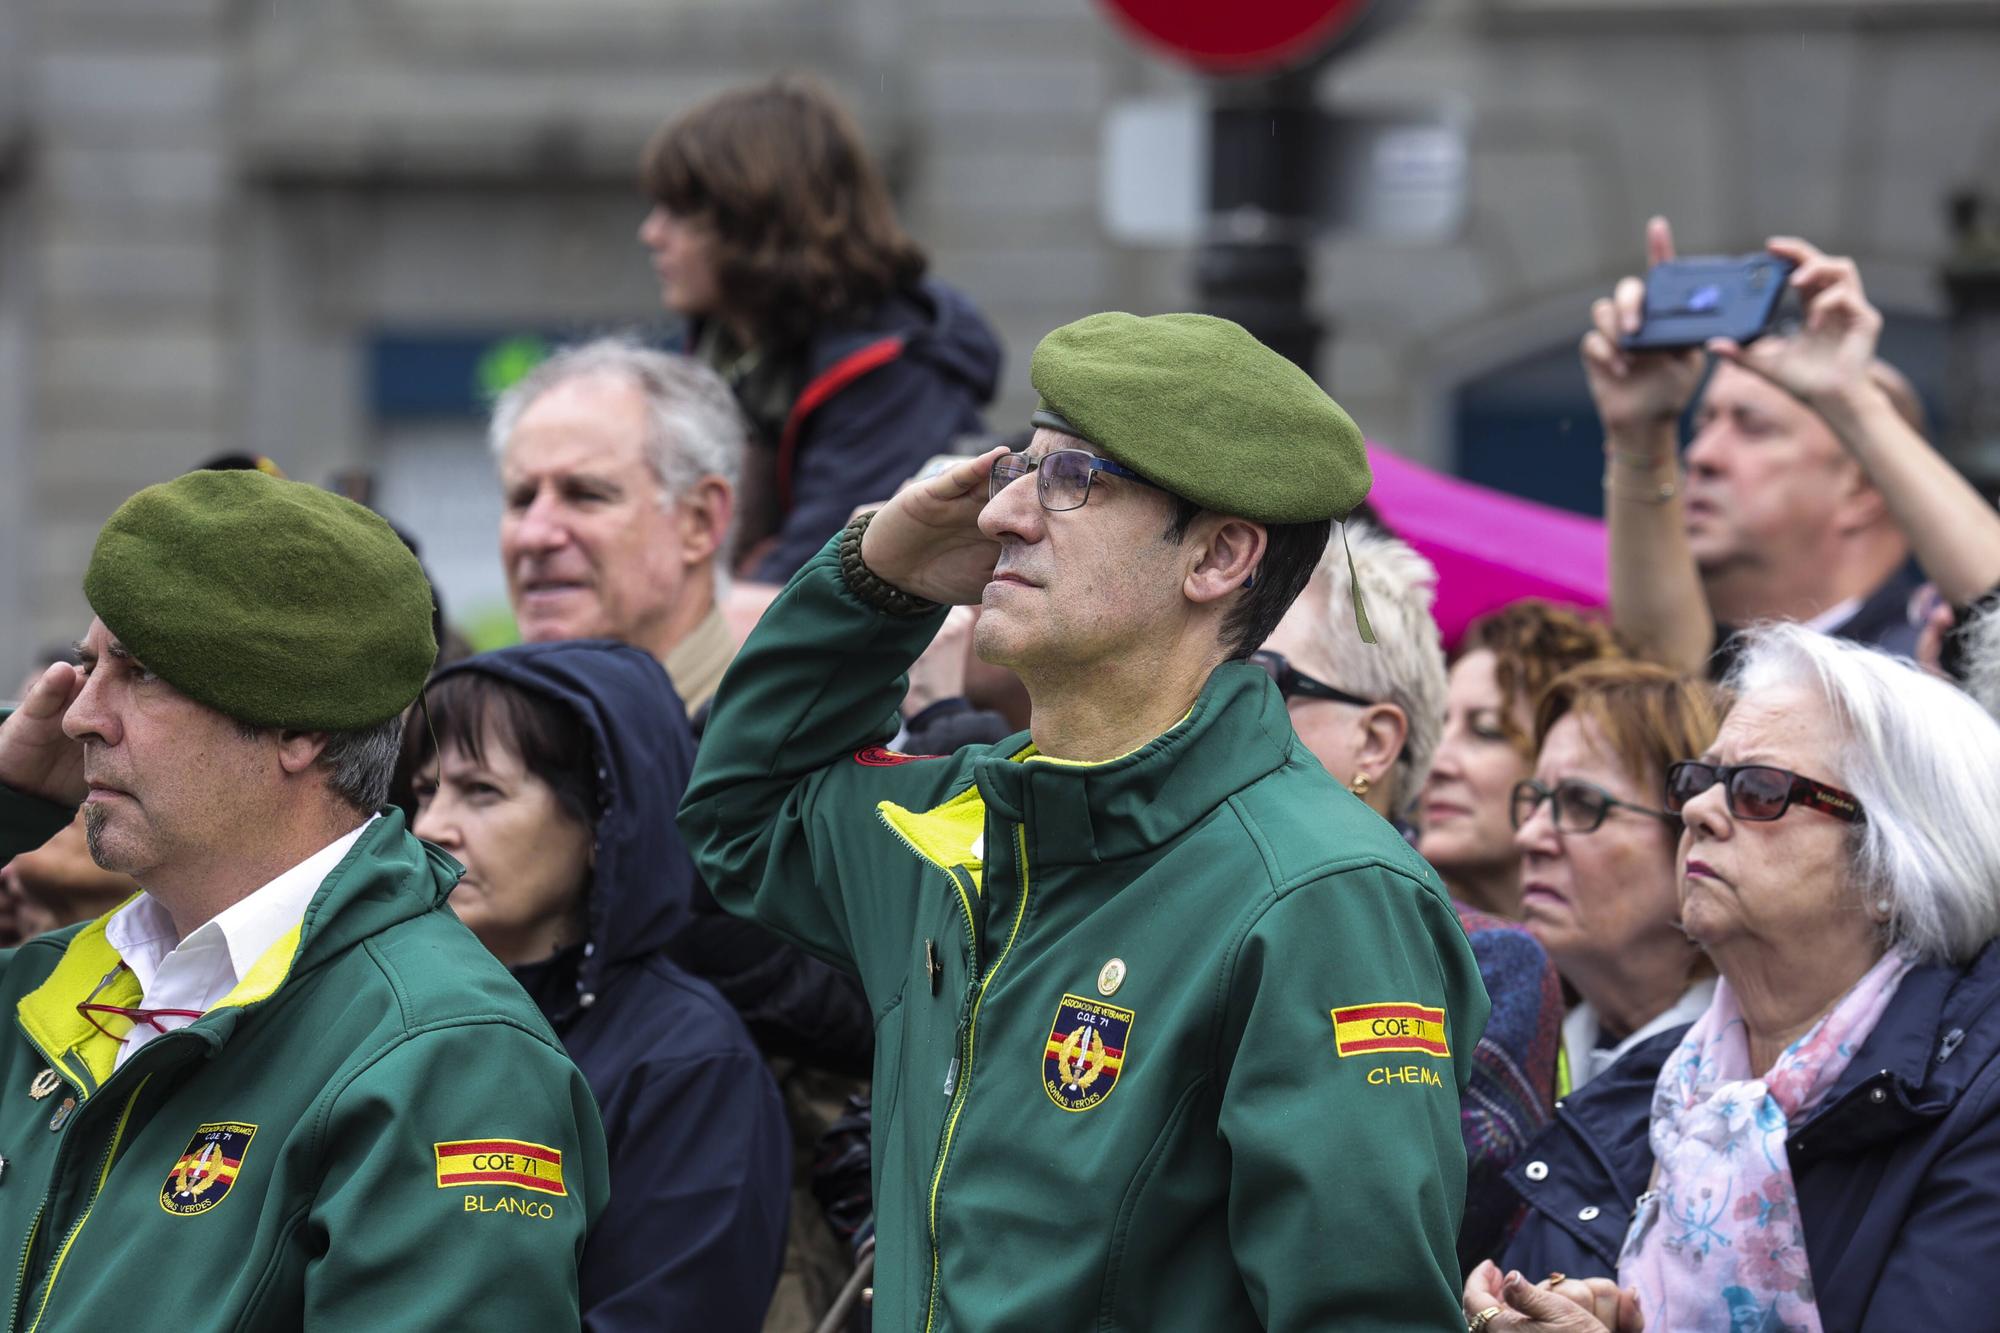 El izado de la bandera y la exposición del Bombé abren los actos del Día de las Fuerzas Armadas en Oviedo.